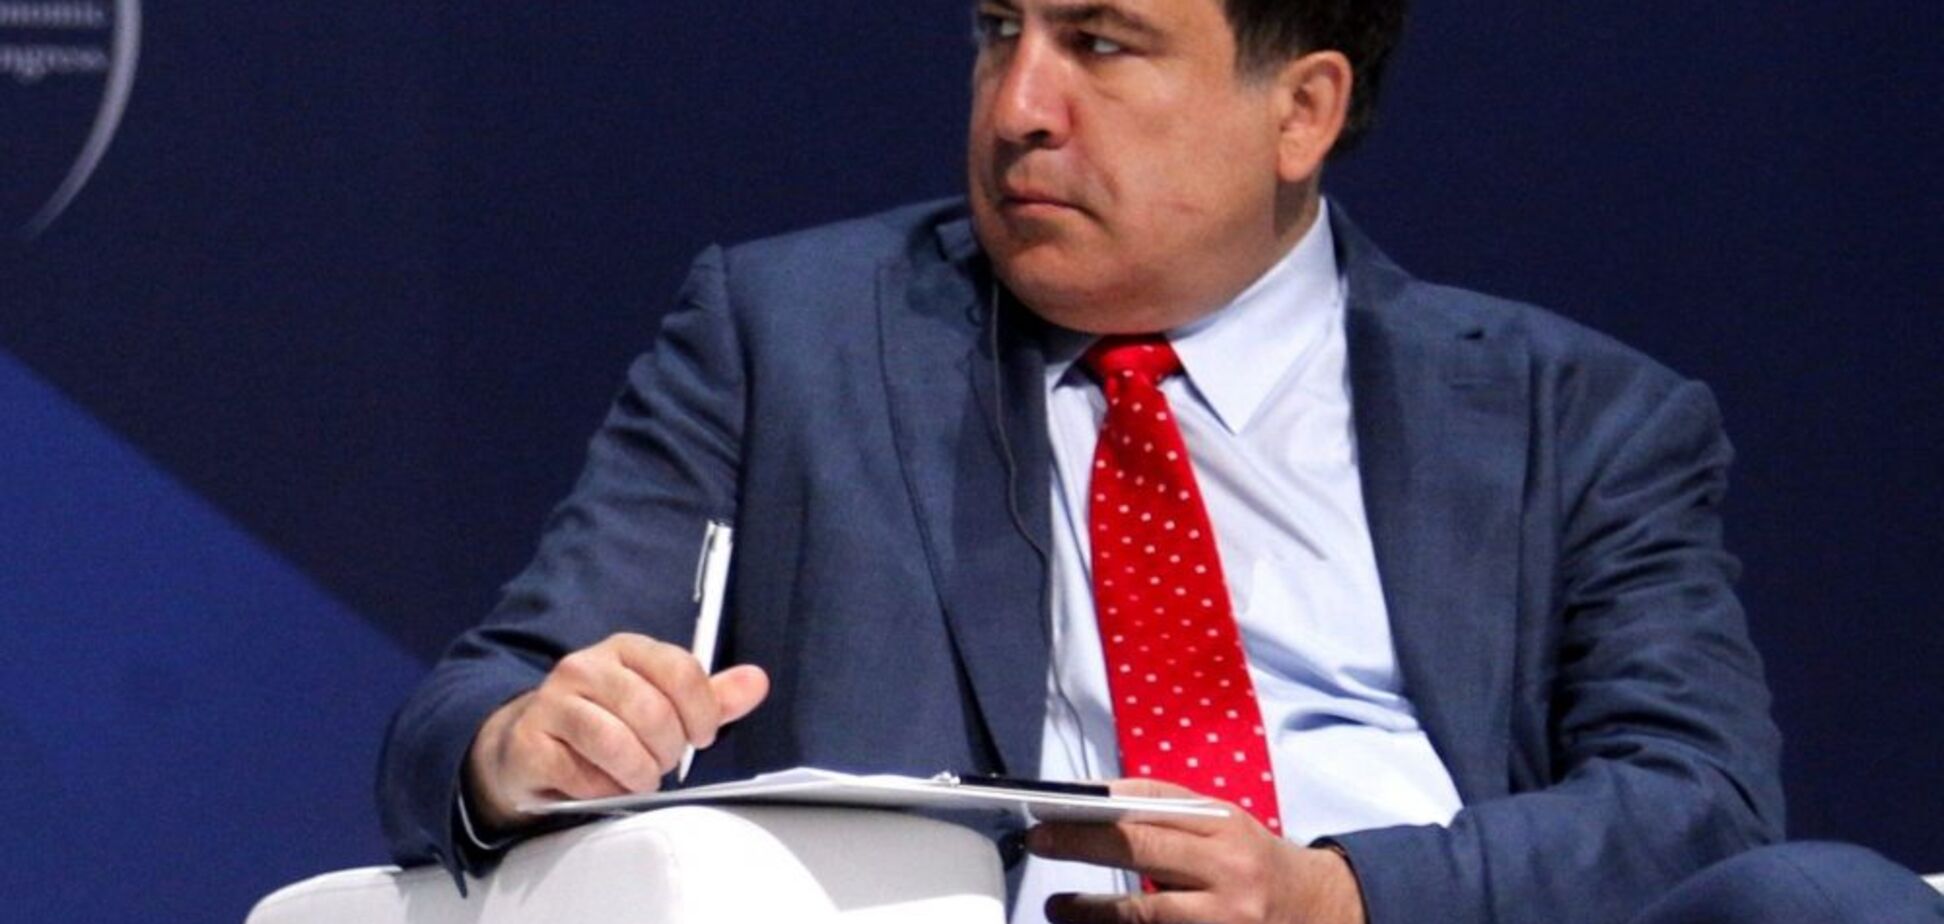 Интрига раскрыта: в письме Саакашвили к Порошенко увидели интересную деталь